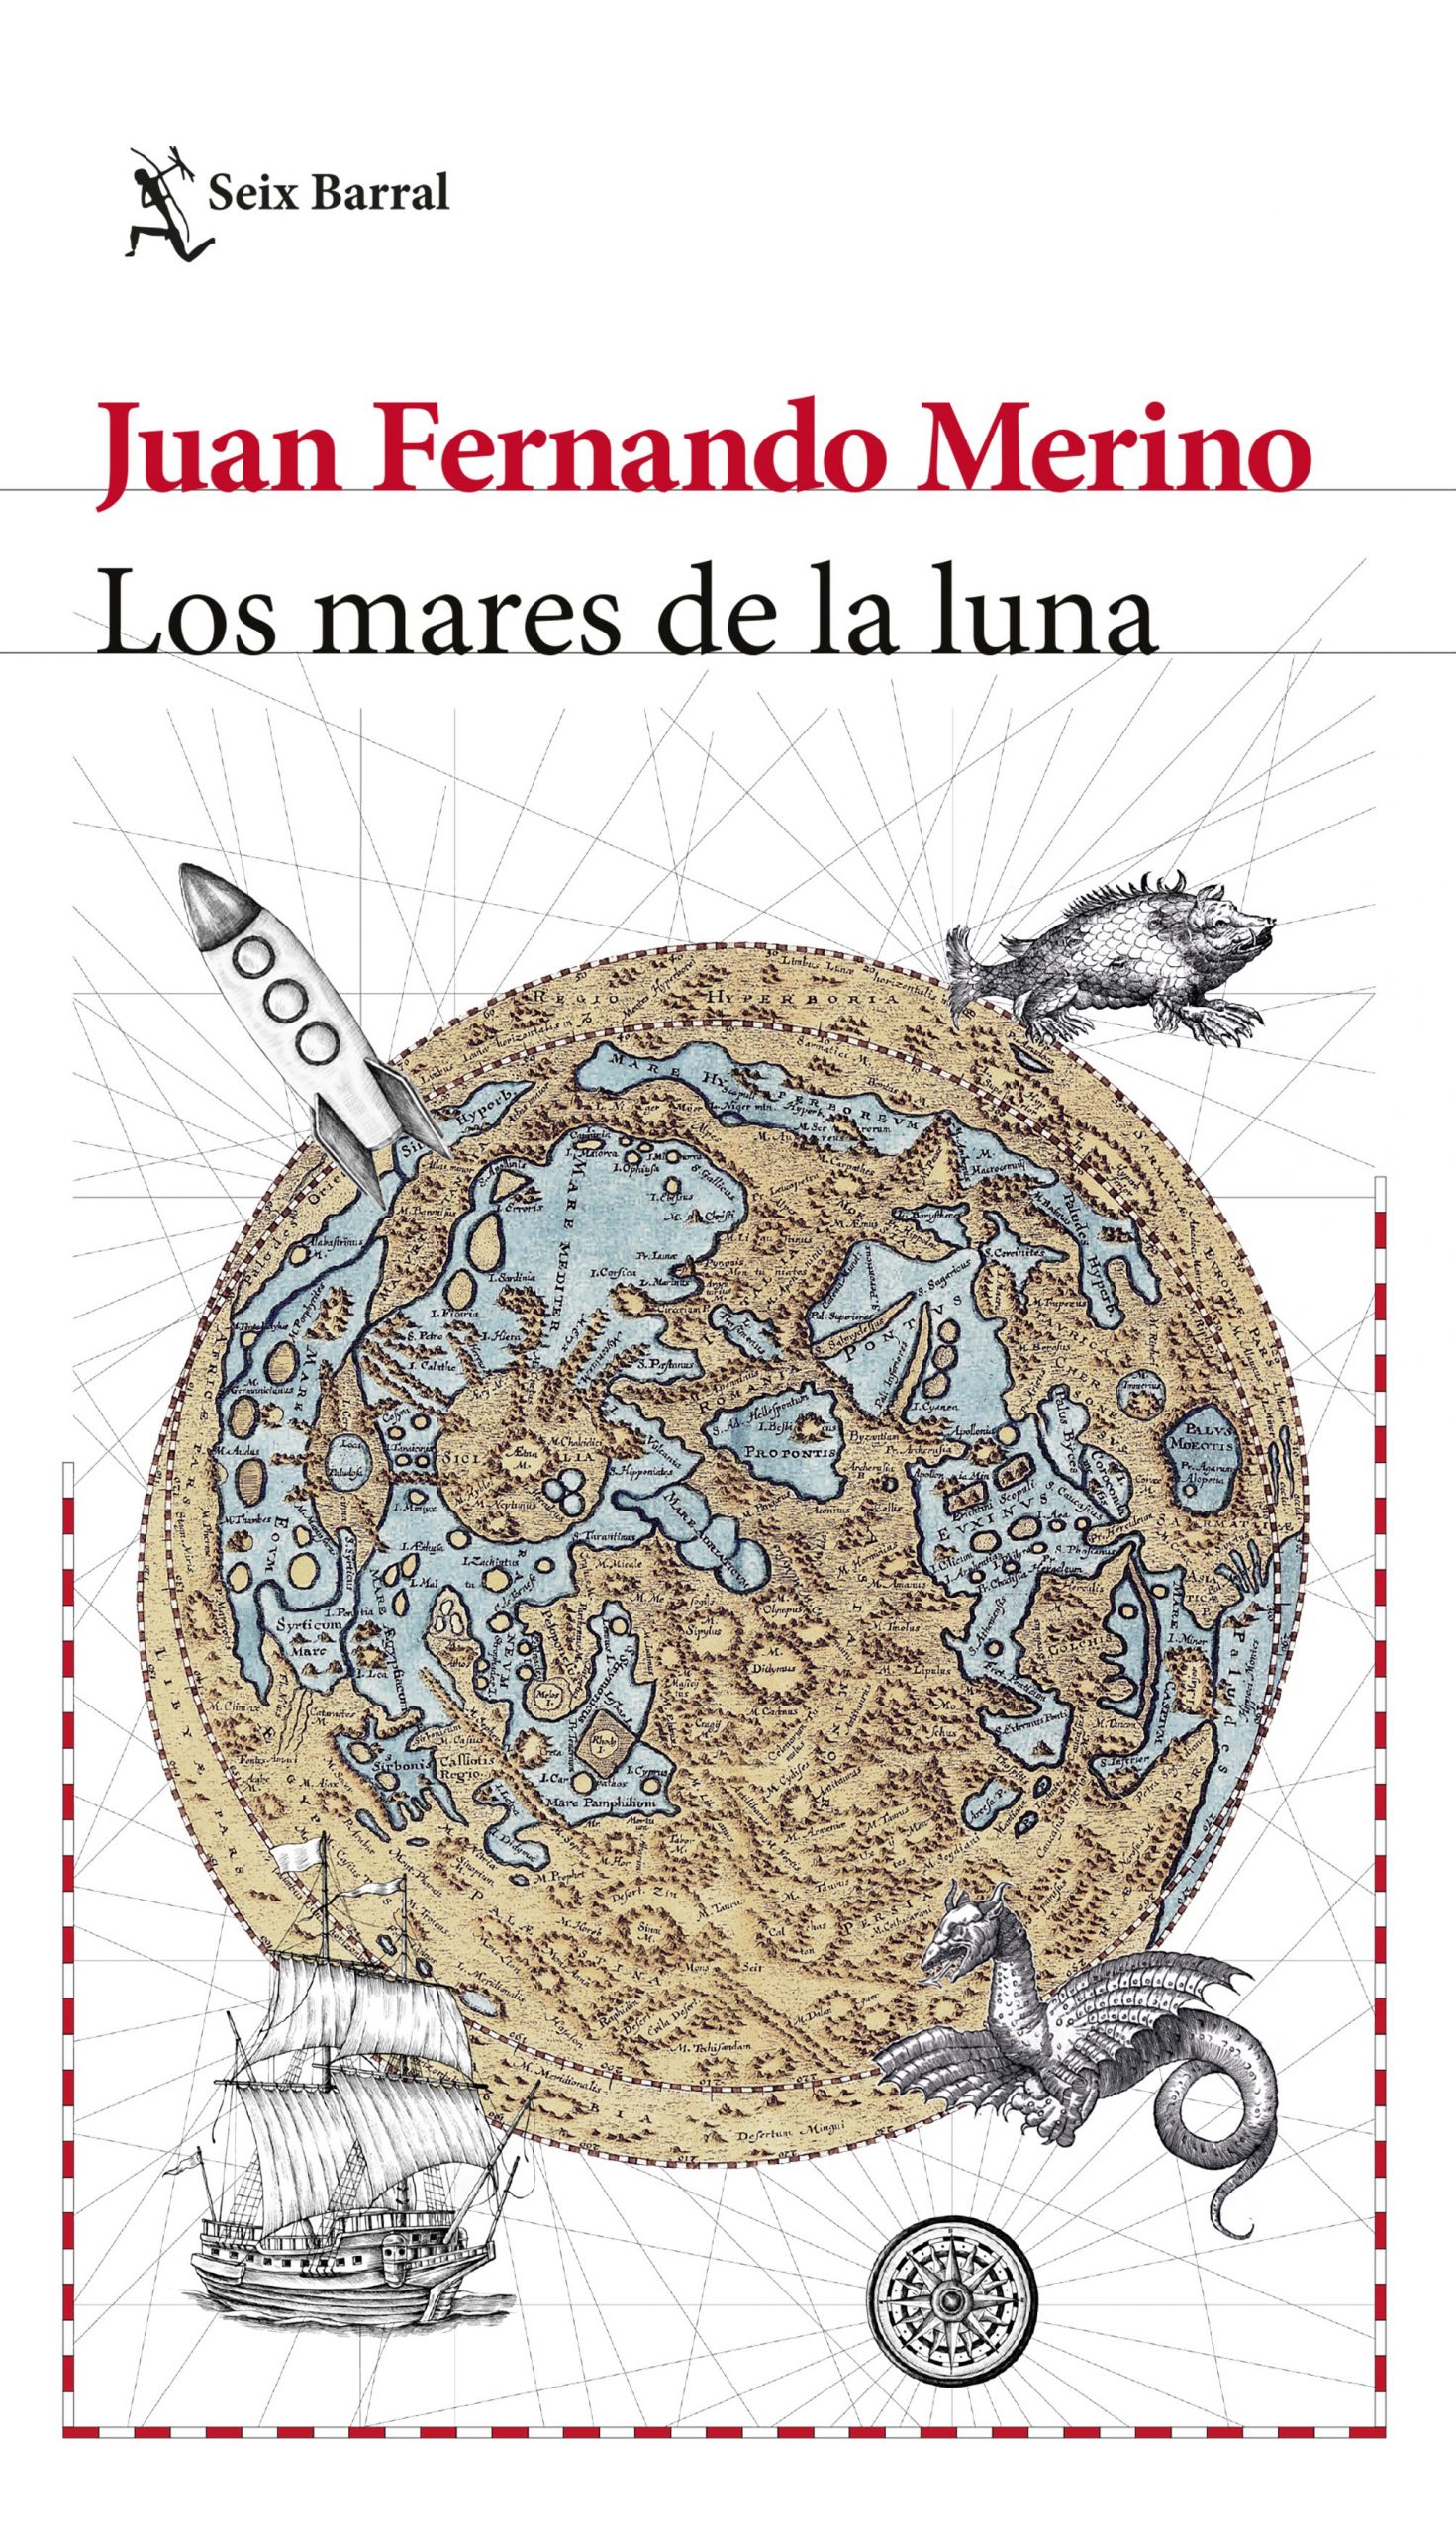 Excentricidades en ‘Los mares de la luna’ de Juan Fernando Merino por Juan Sebastián Rojas